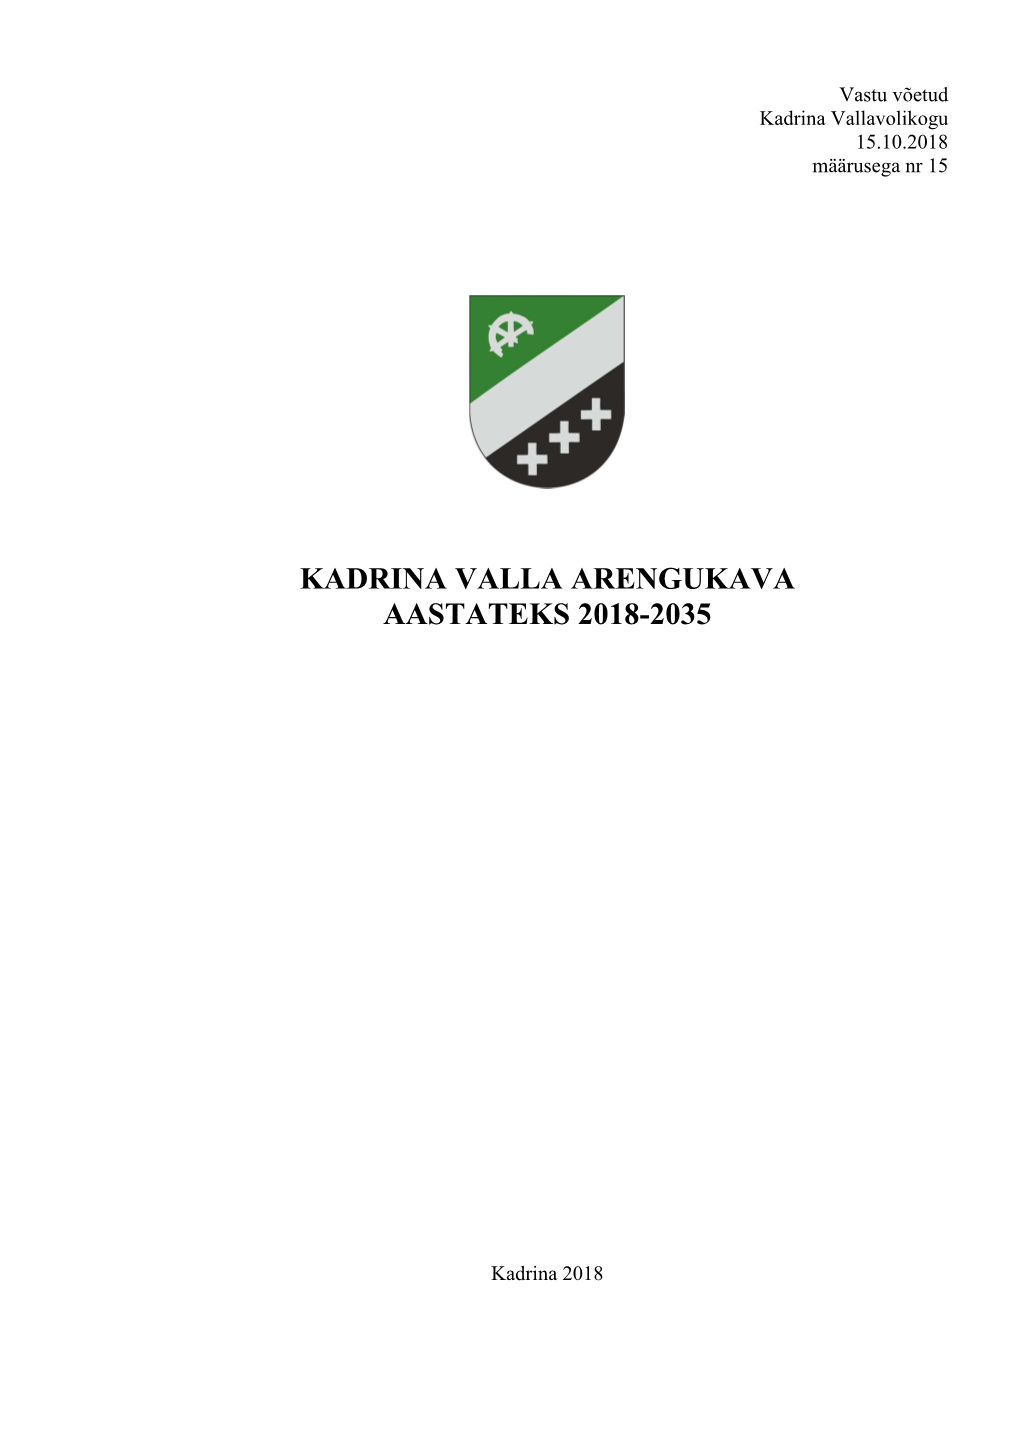 Kadrina Valla Arengukava Aastateks 2018-2035